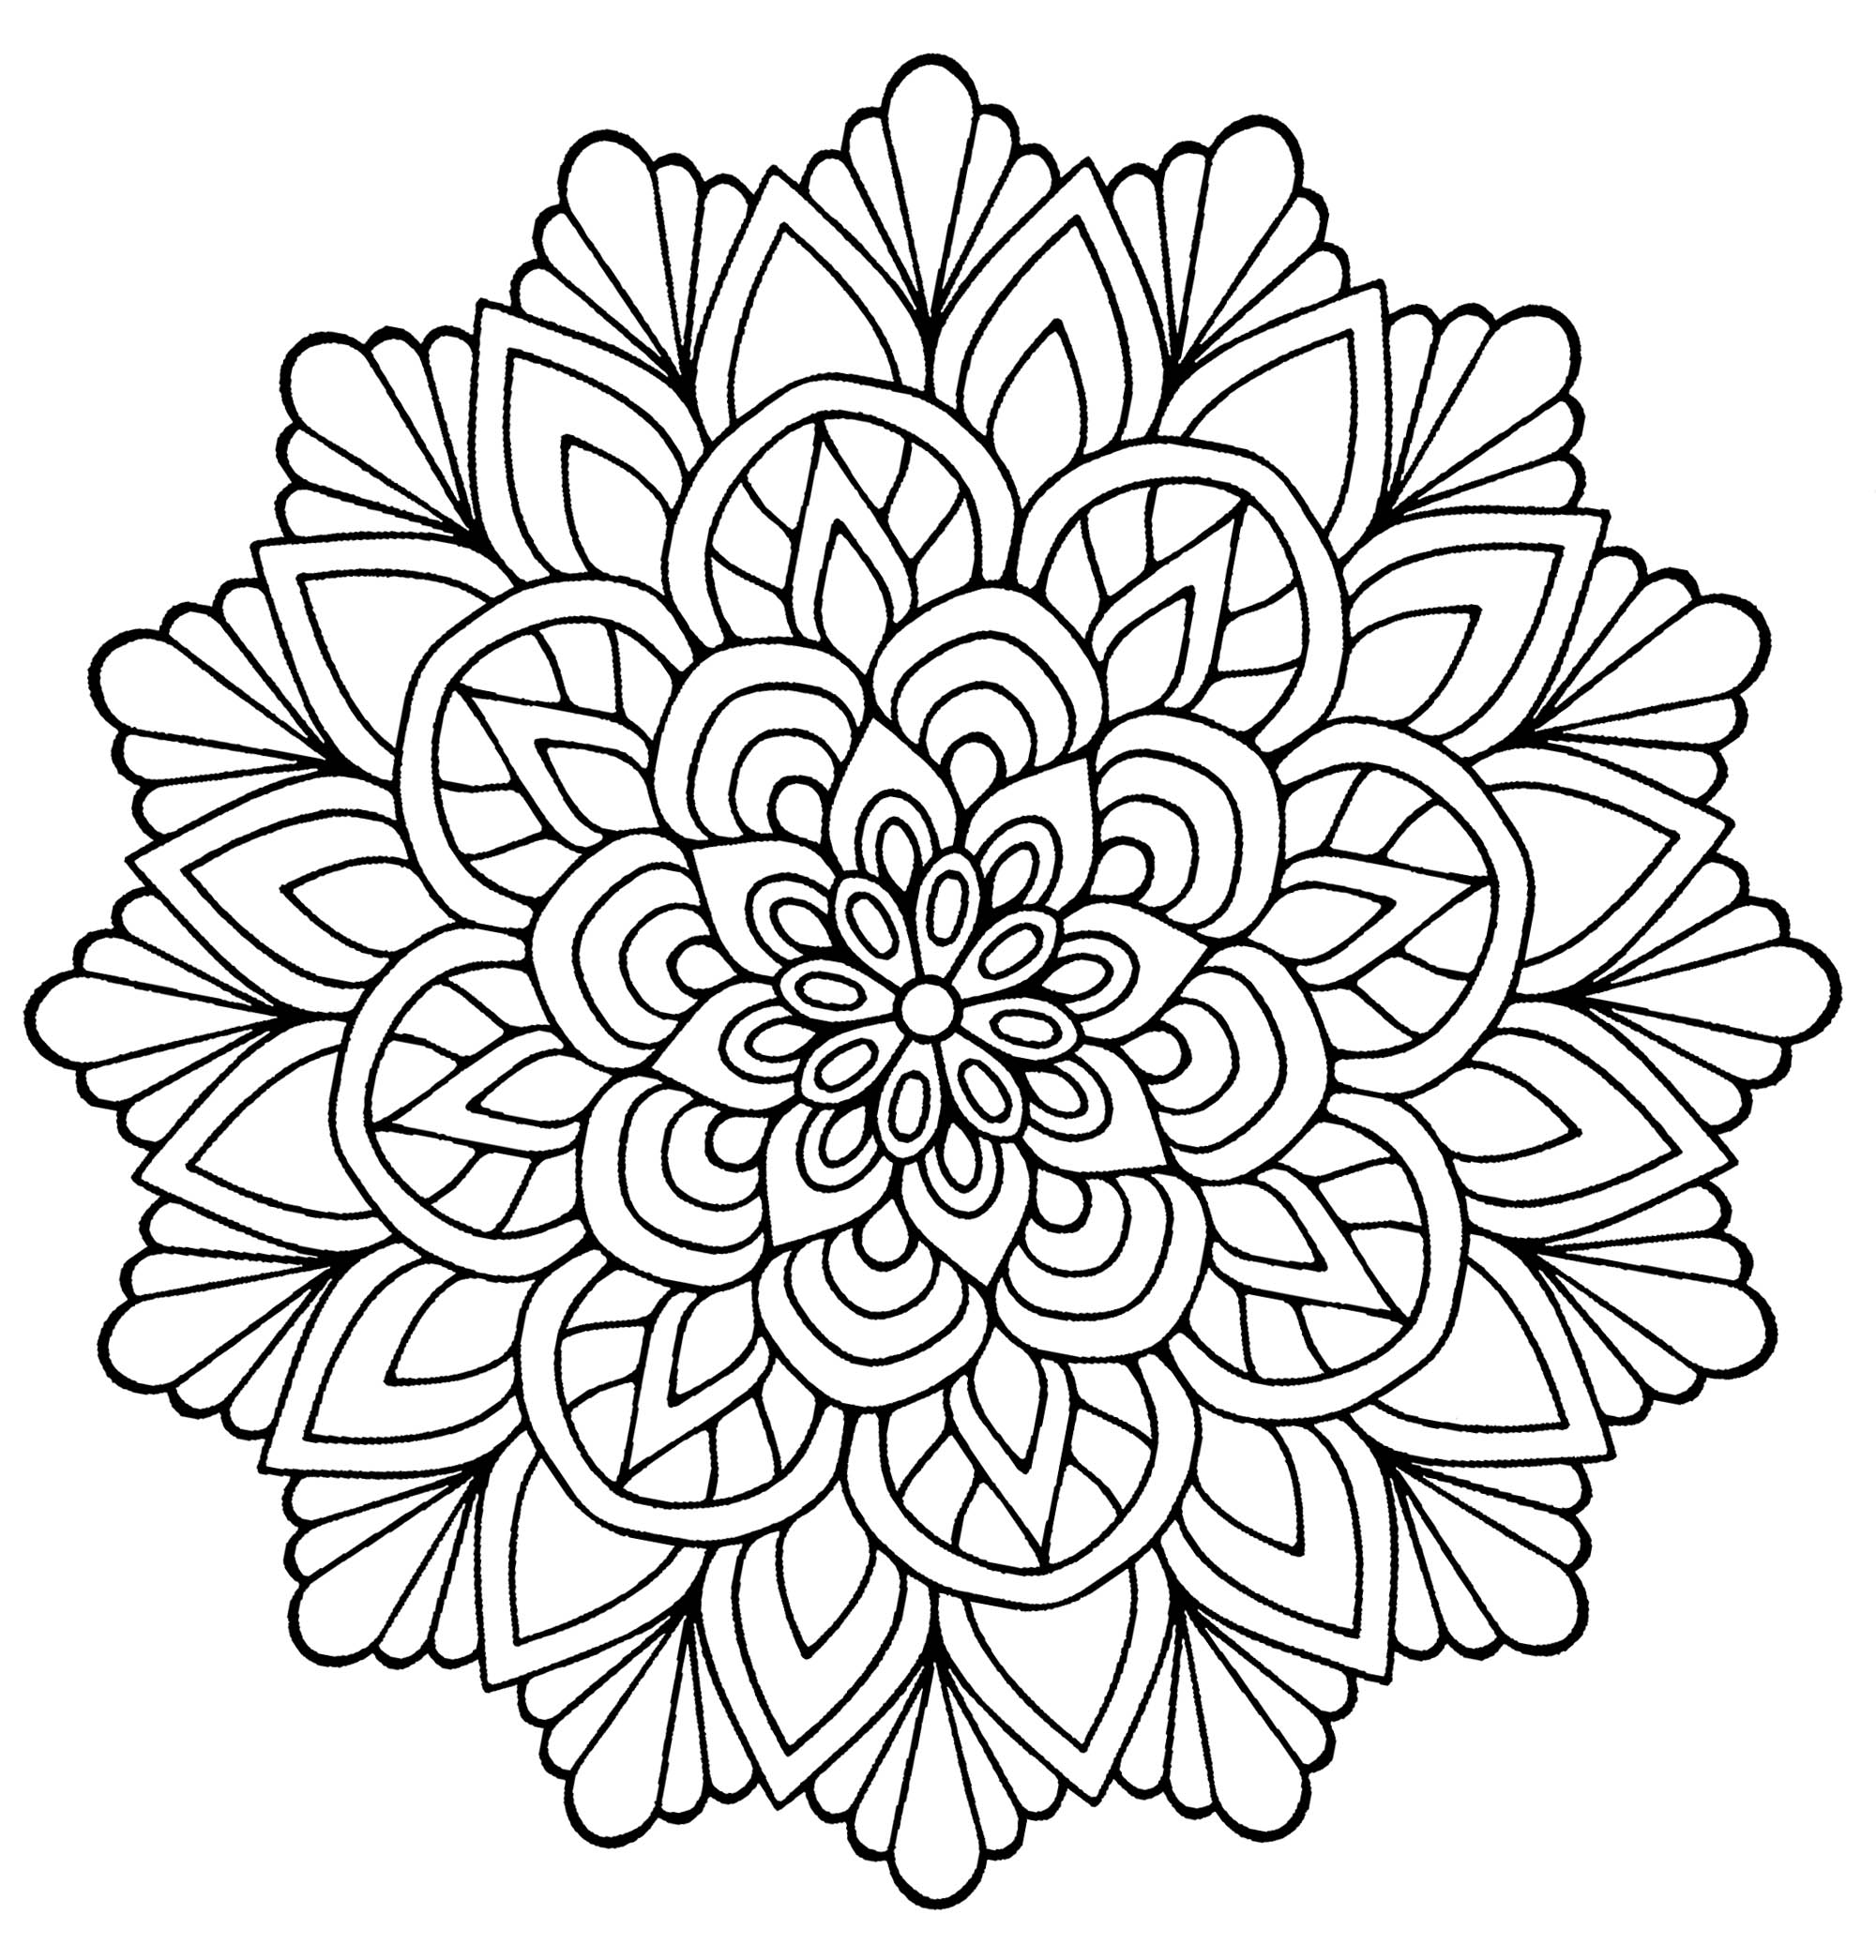 Un bonito mandala para colorear, que parece una flor con hojas